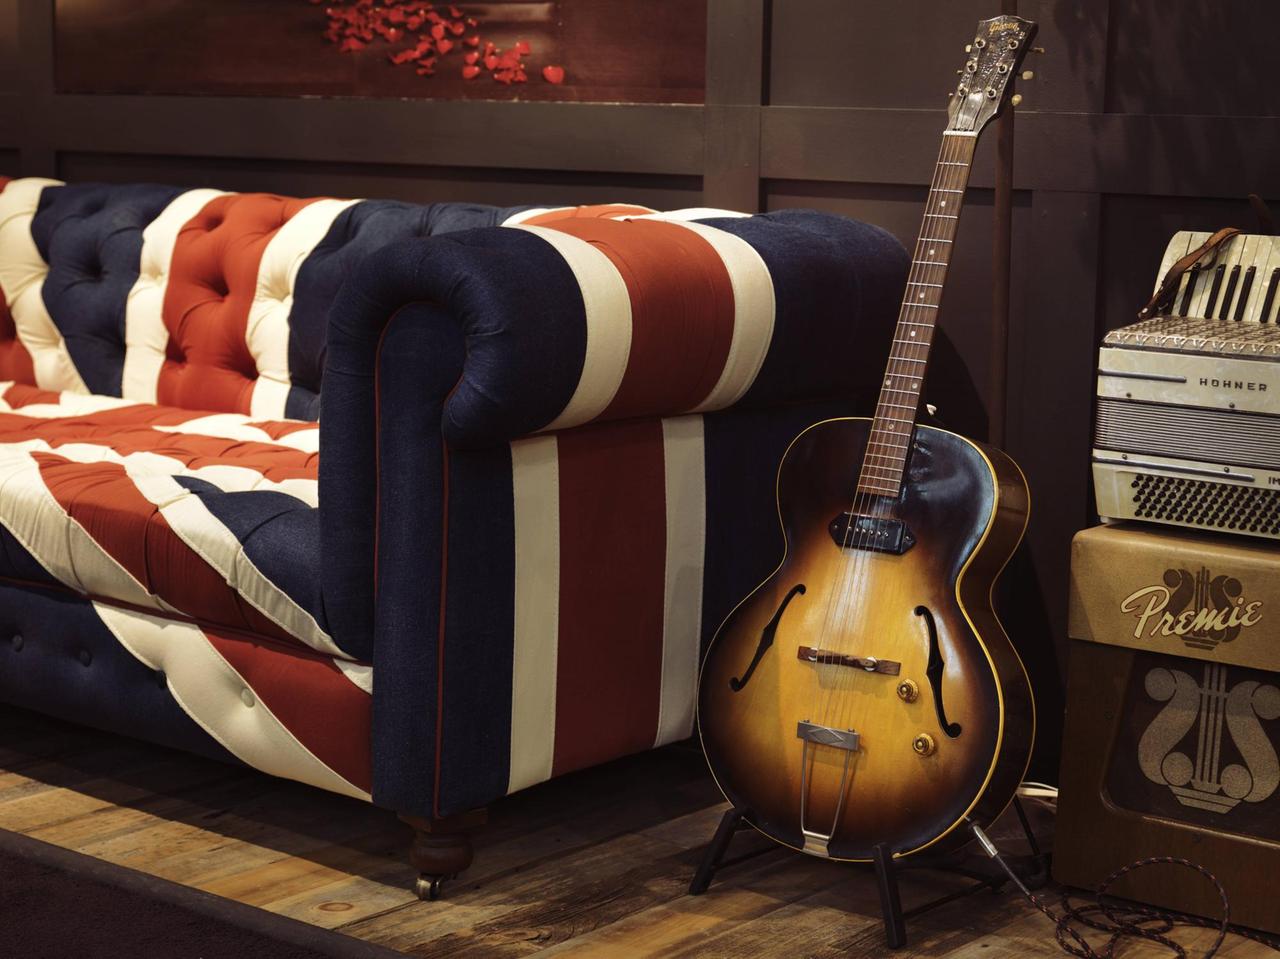 Eine alte akustische Gibson-Gitarre steht auf einem Ständer neben einem Sofa mit dem Union Jack als Muster.